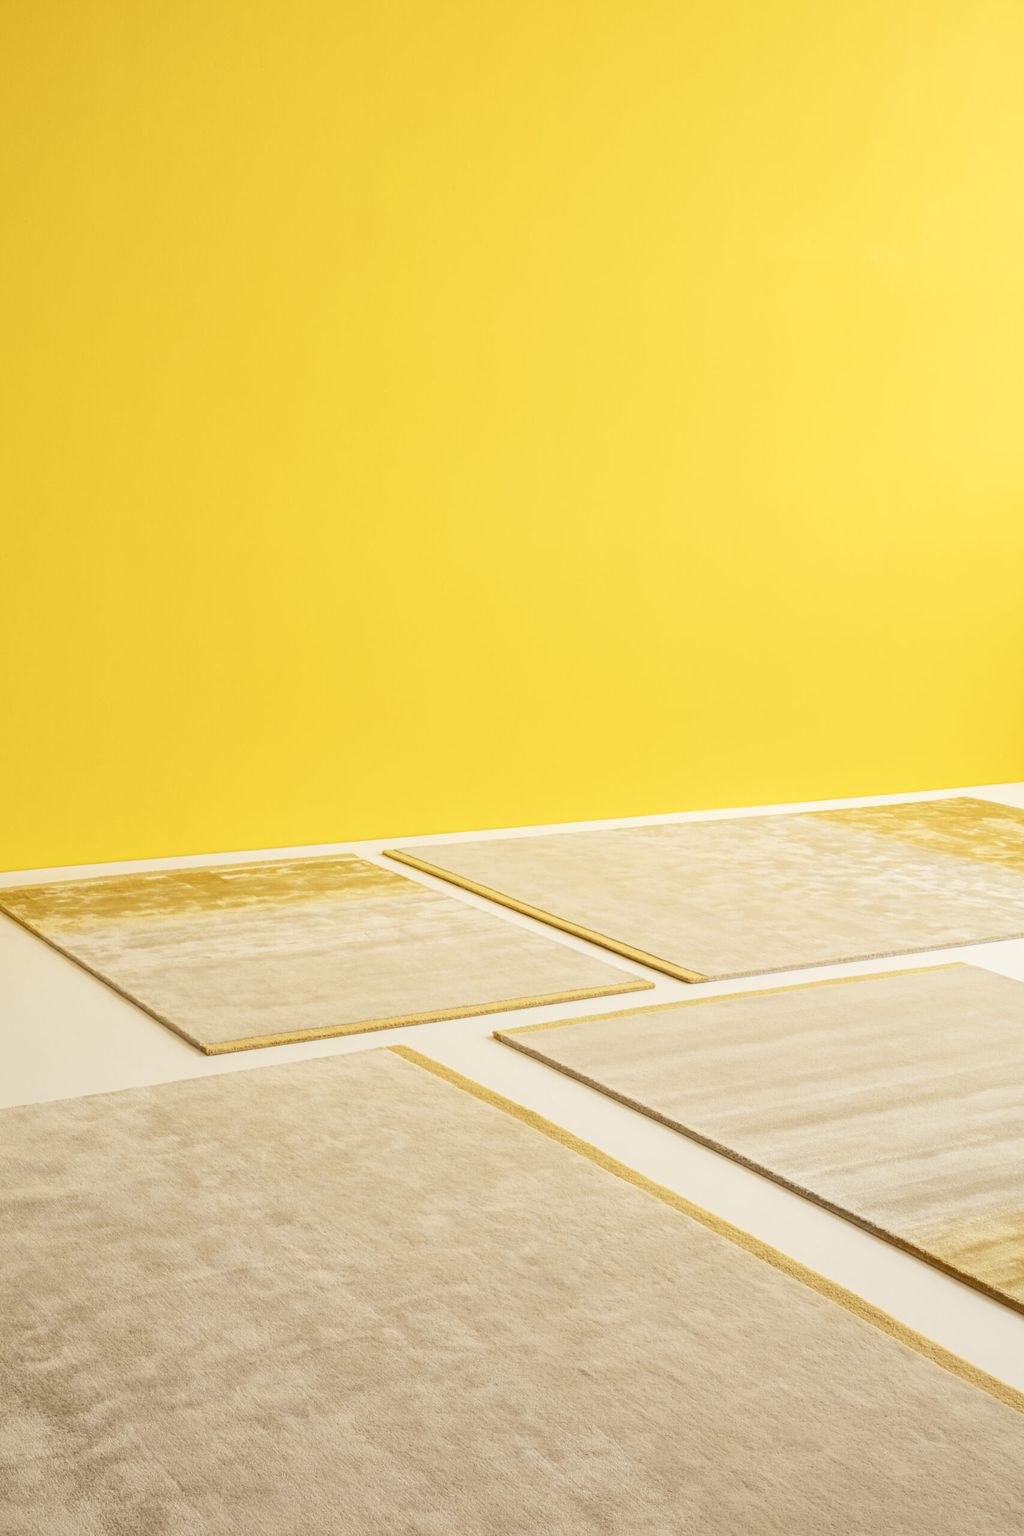 用手工制成的纳布拉地毯140 x 200，日出